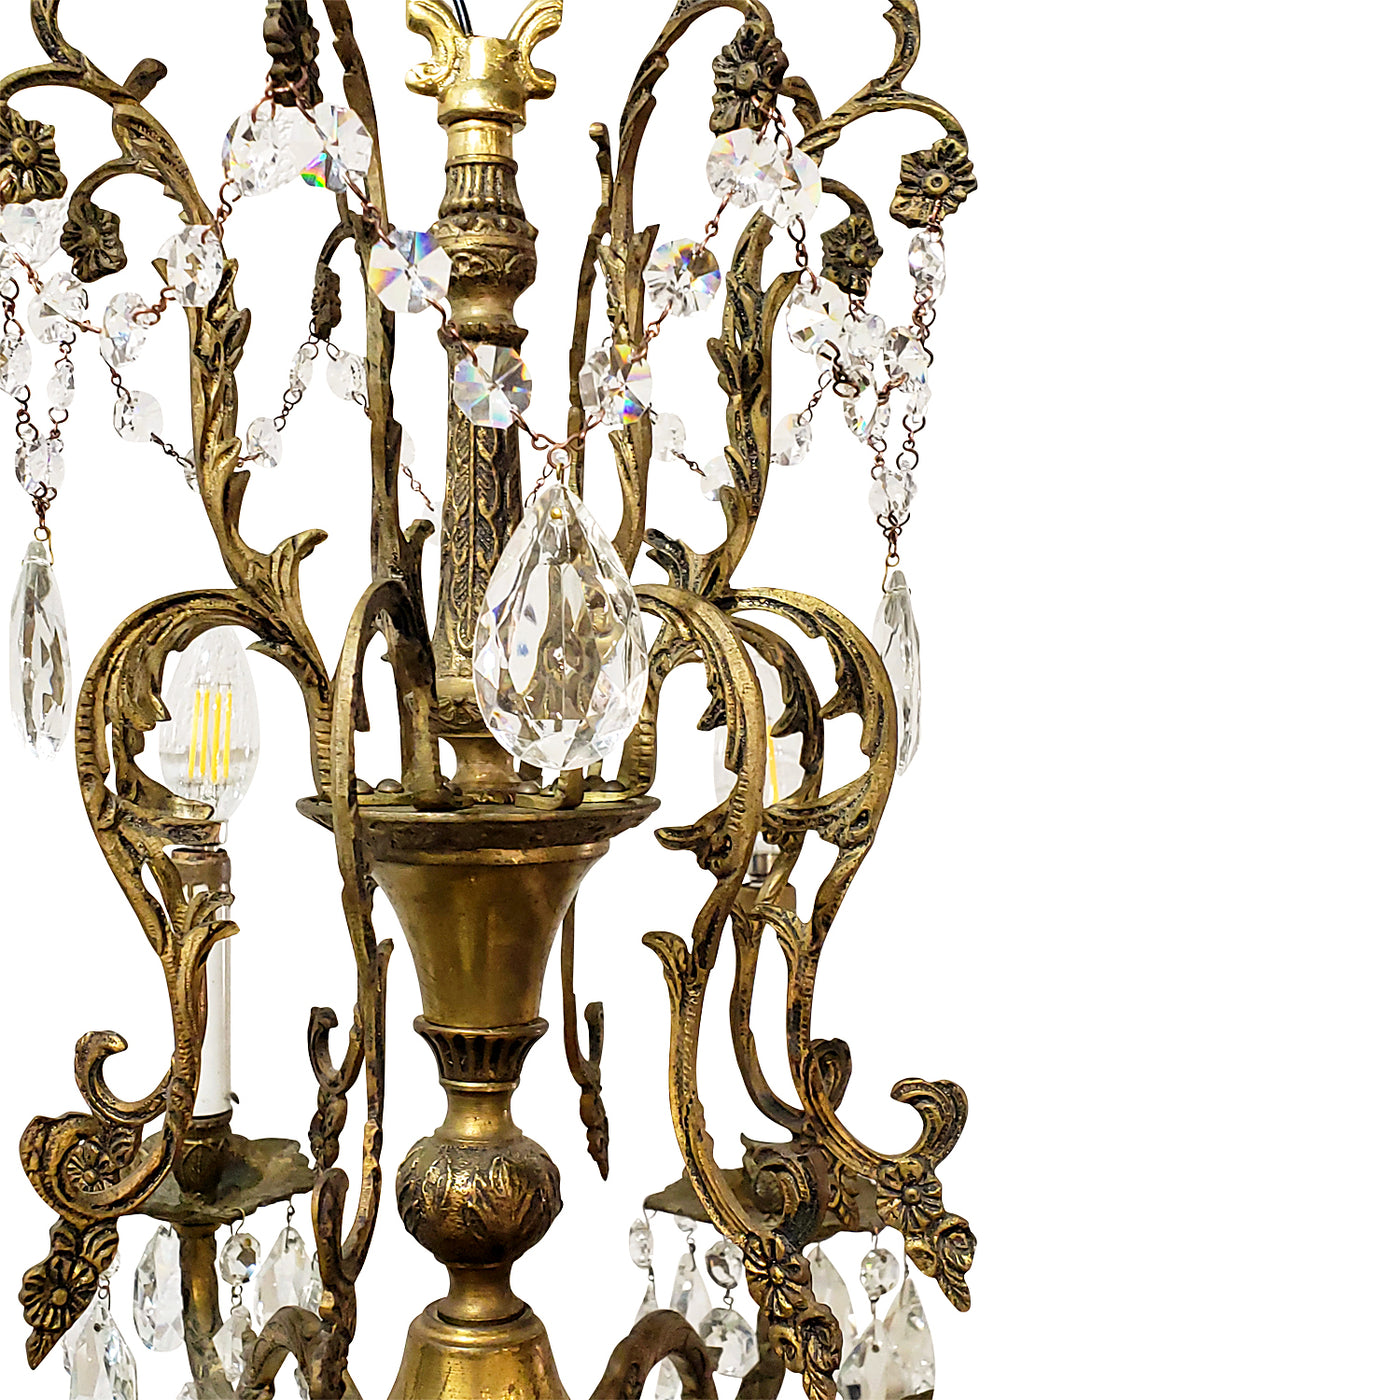 Exquisite Antique Spanish Brass 8 Arm Chandelier & Crystal Prisms